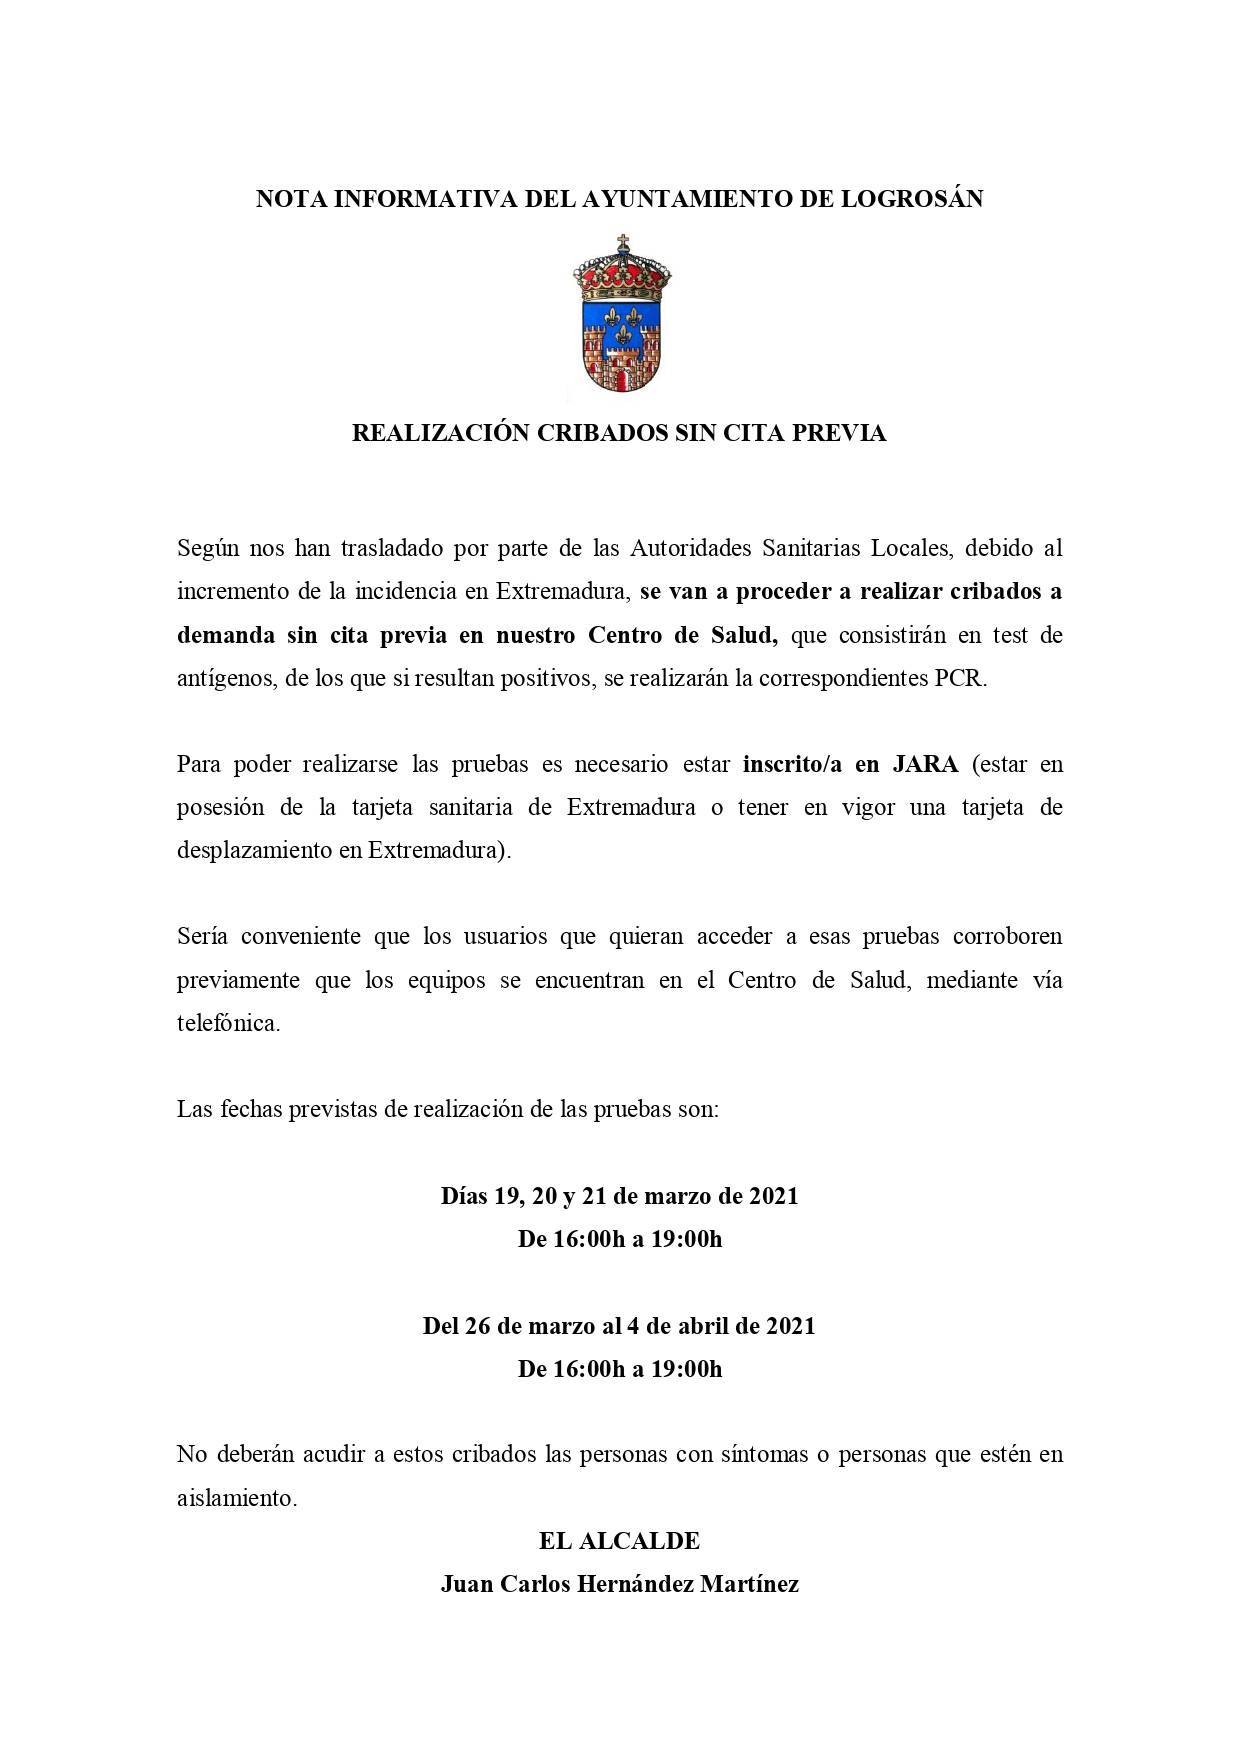 Realización de cribados masivos de COVID-19 (marzo-abril 2021) - Logrosán (Cáceres)